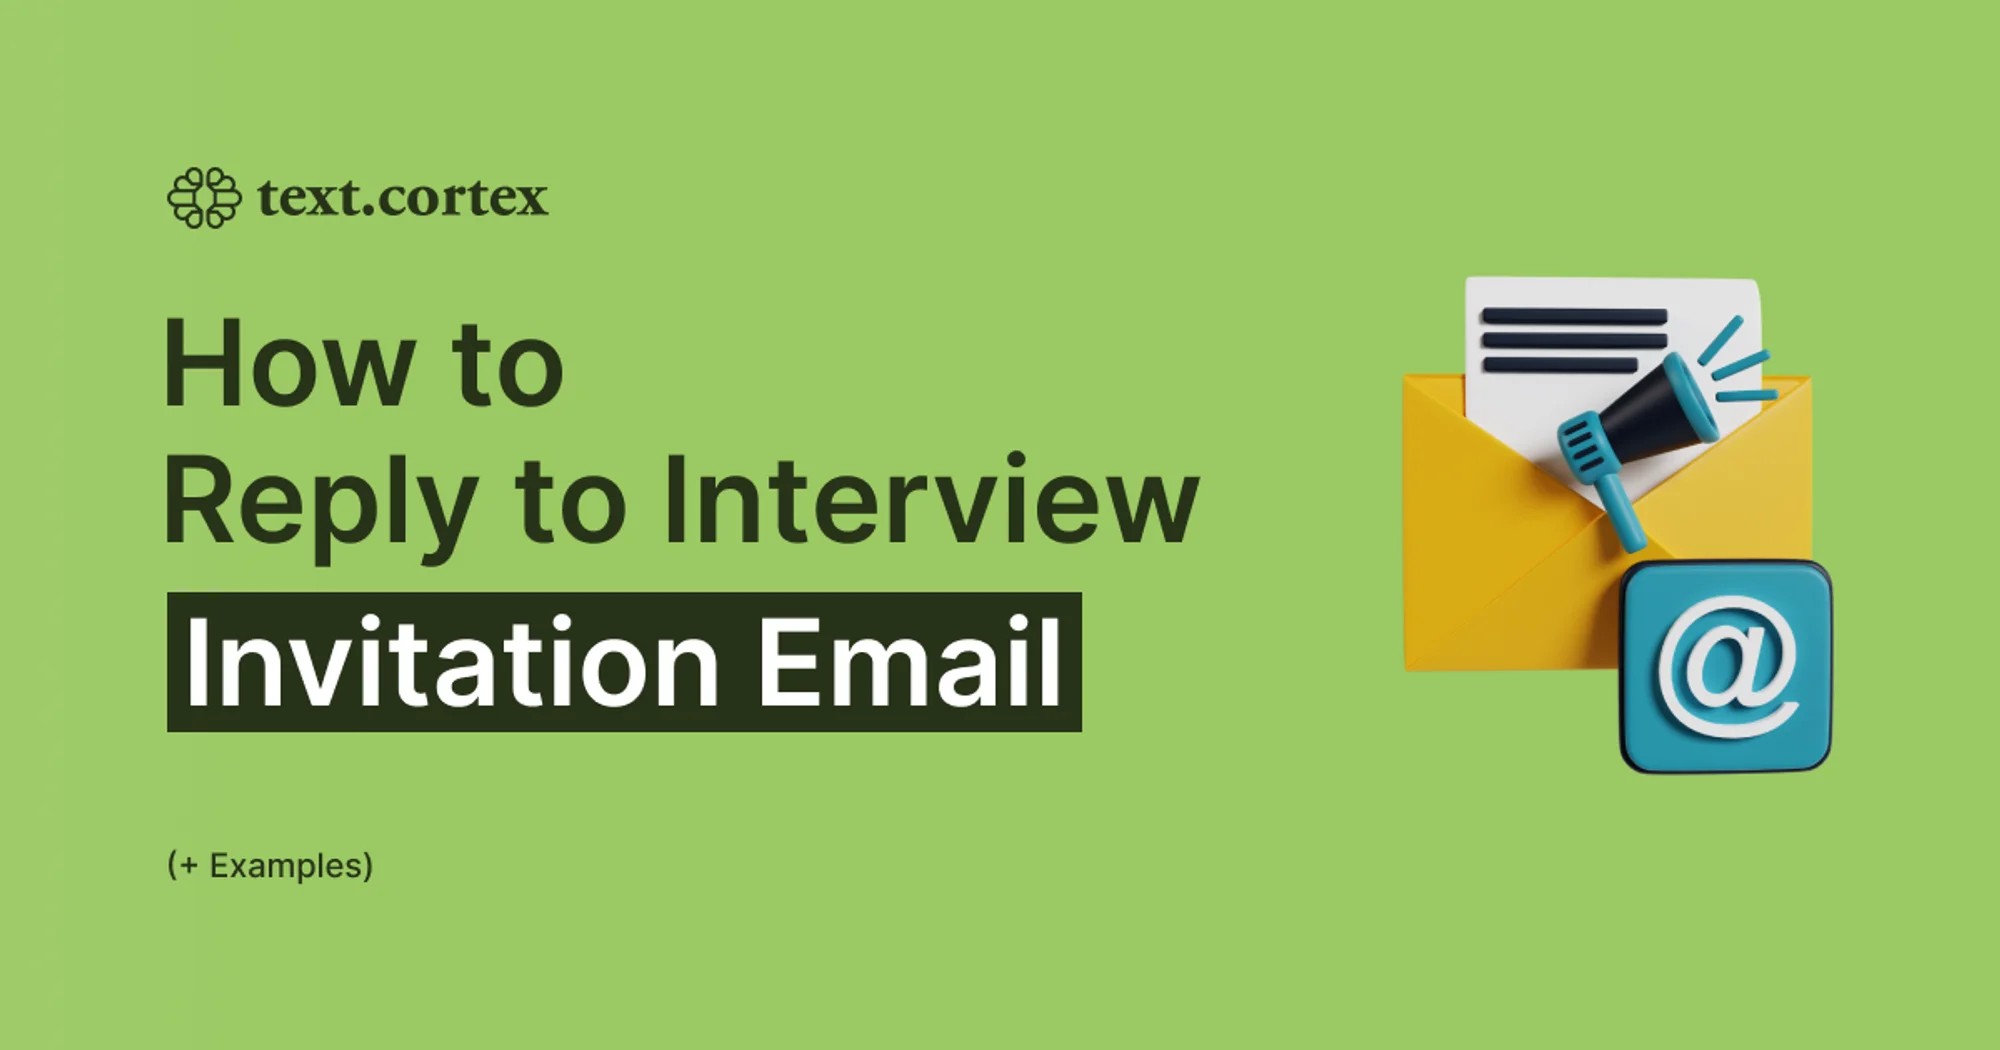 Cómo responder al correo electrónico de invitación a una entrevista (+Ejemplos)